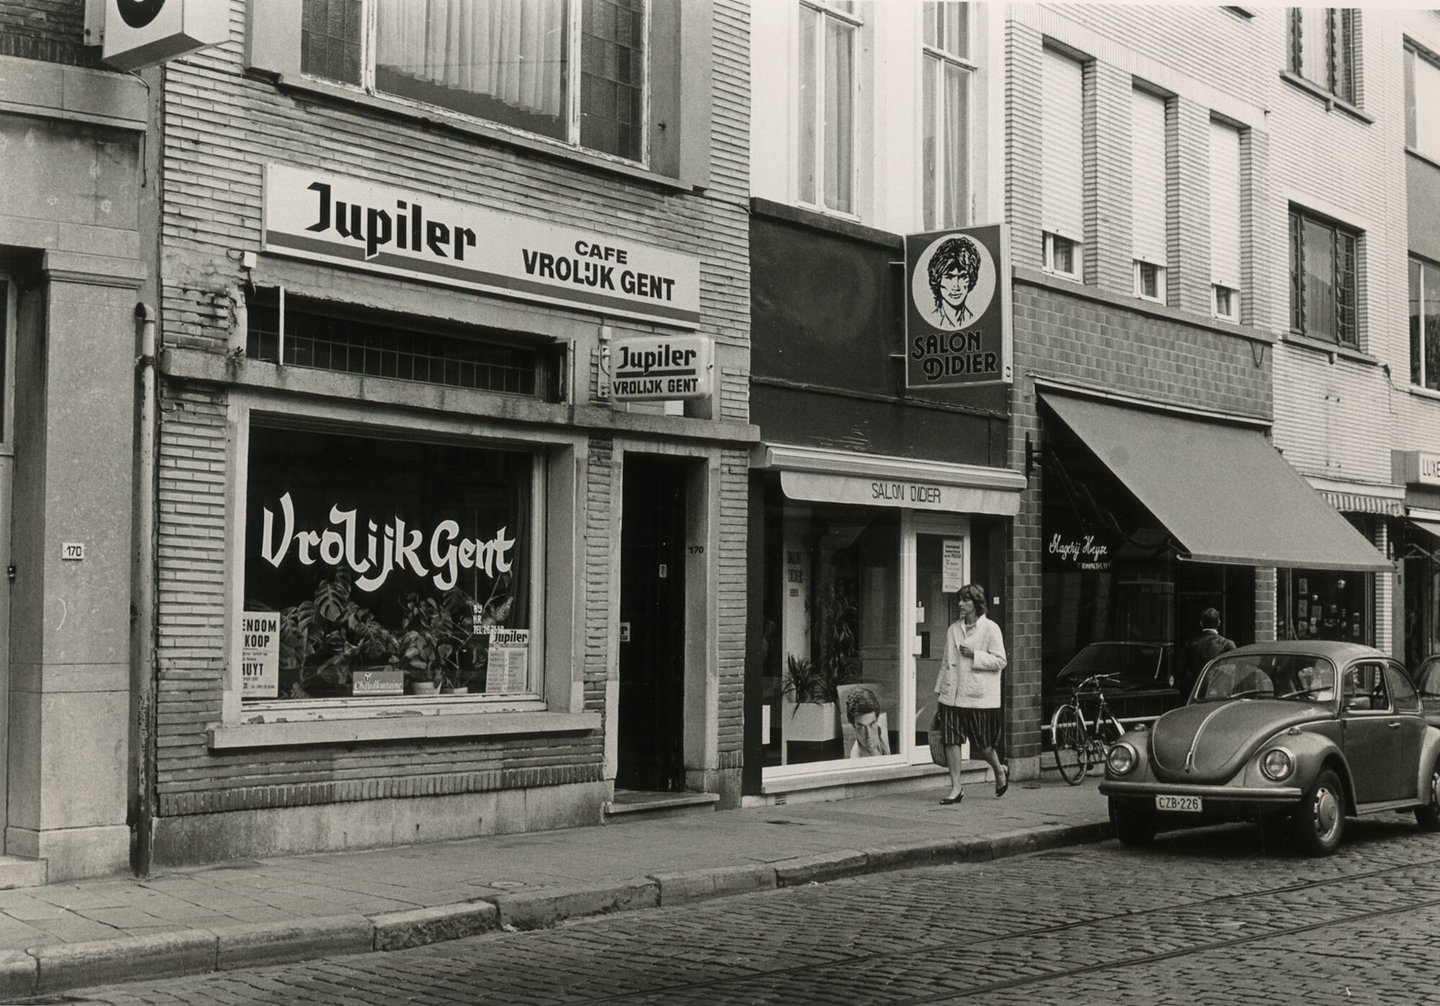 Straatbeeld met winkels en café Vrolijk in Gent